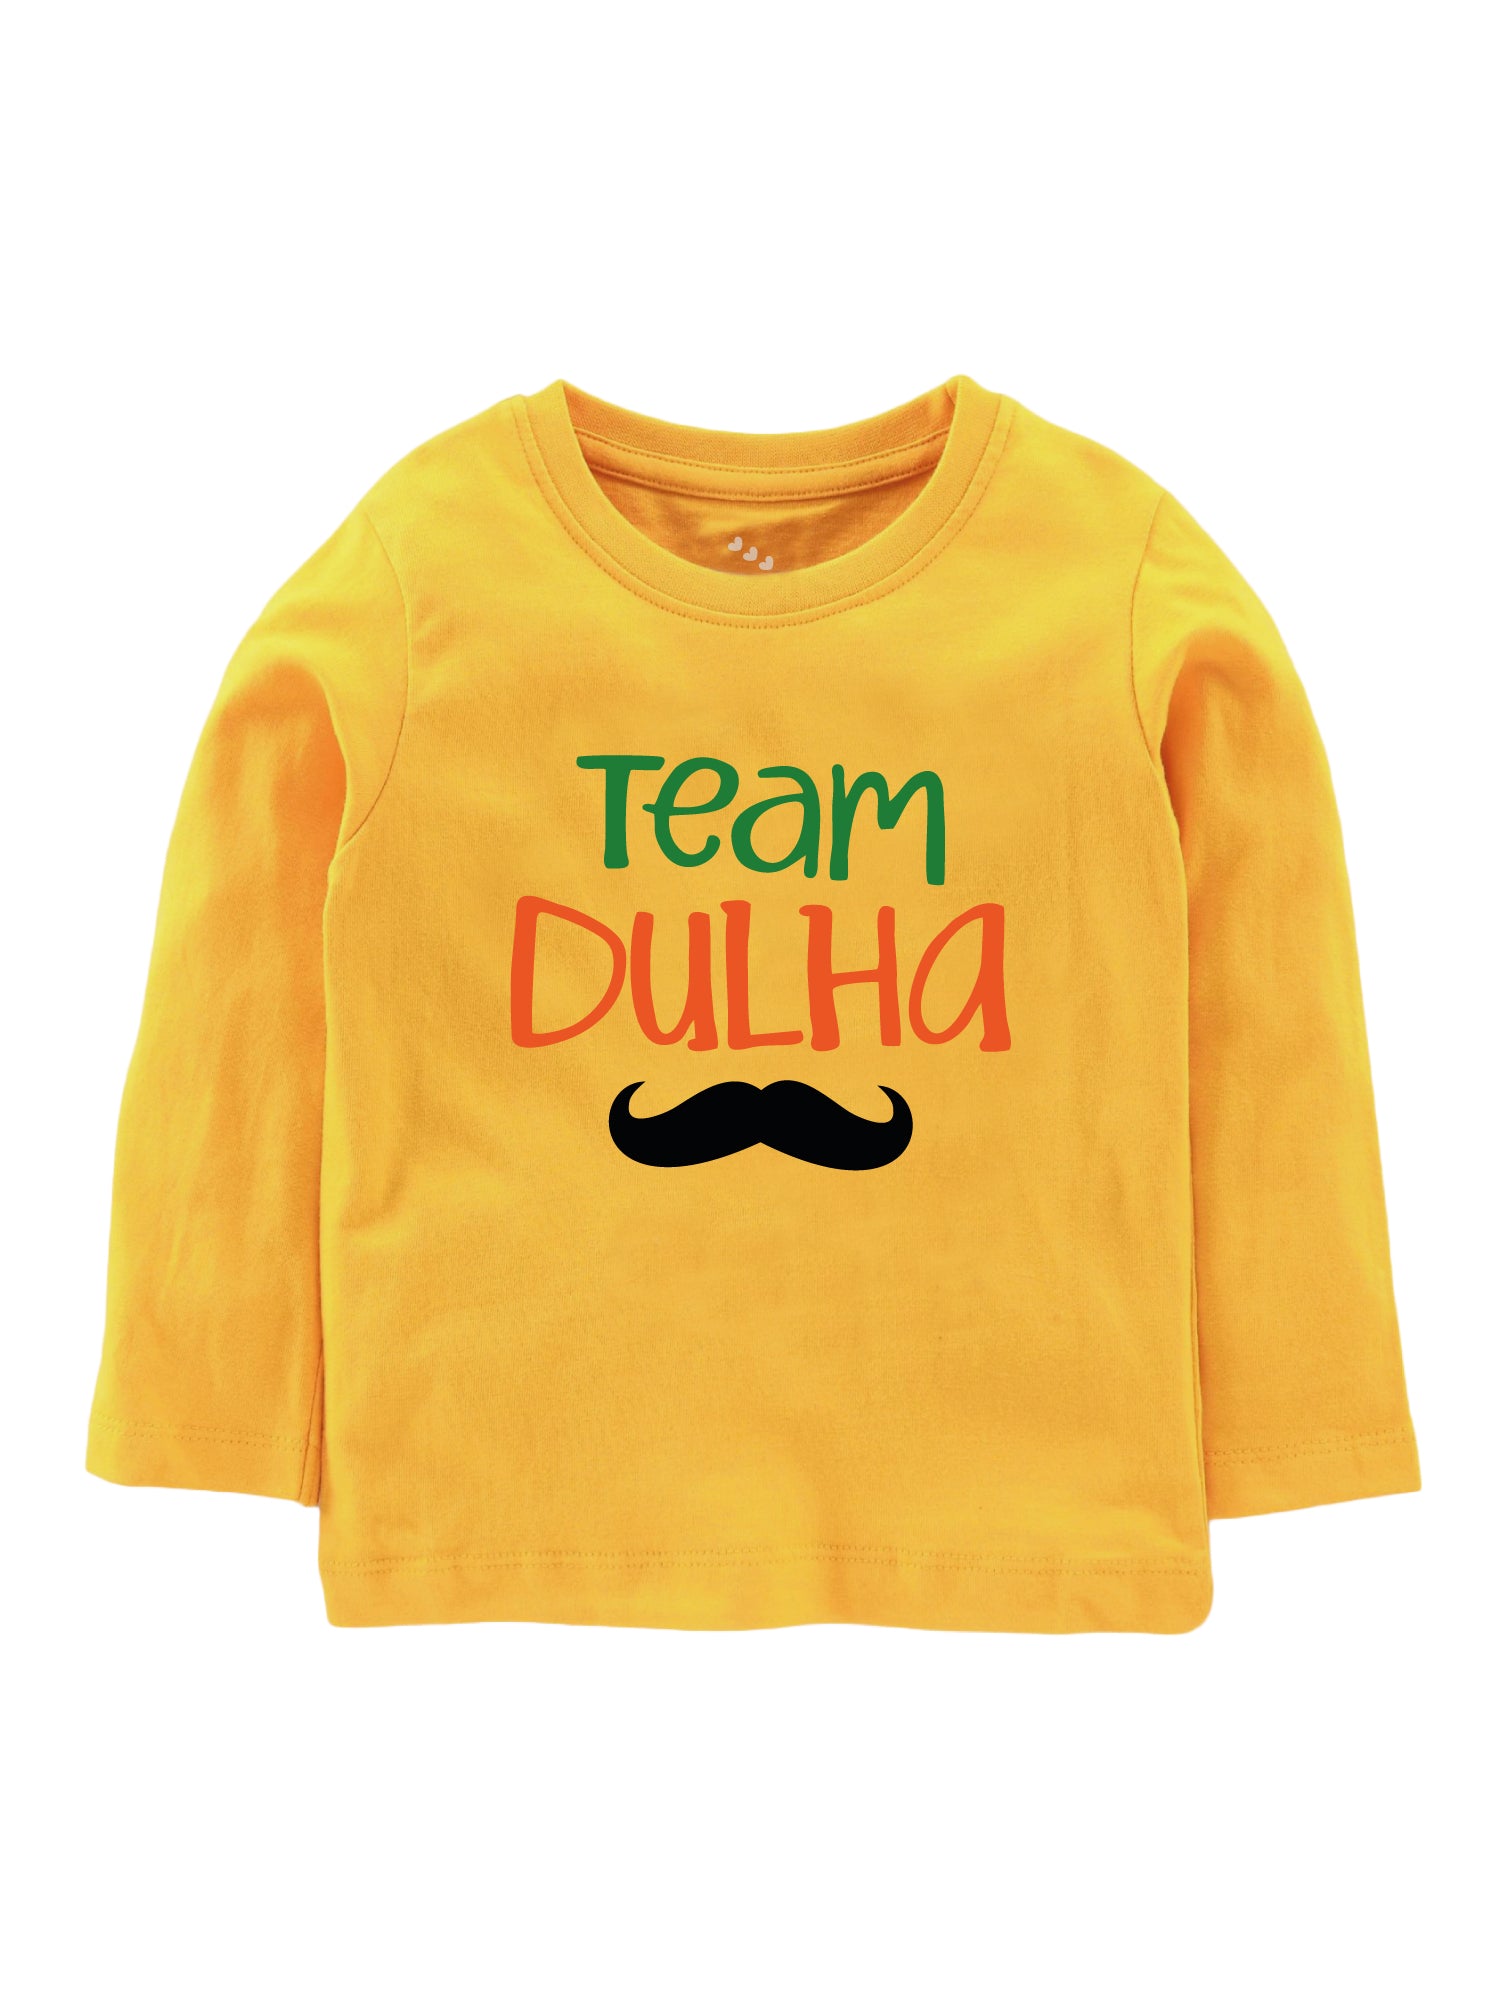 Team Dulha - Tee